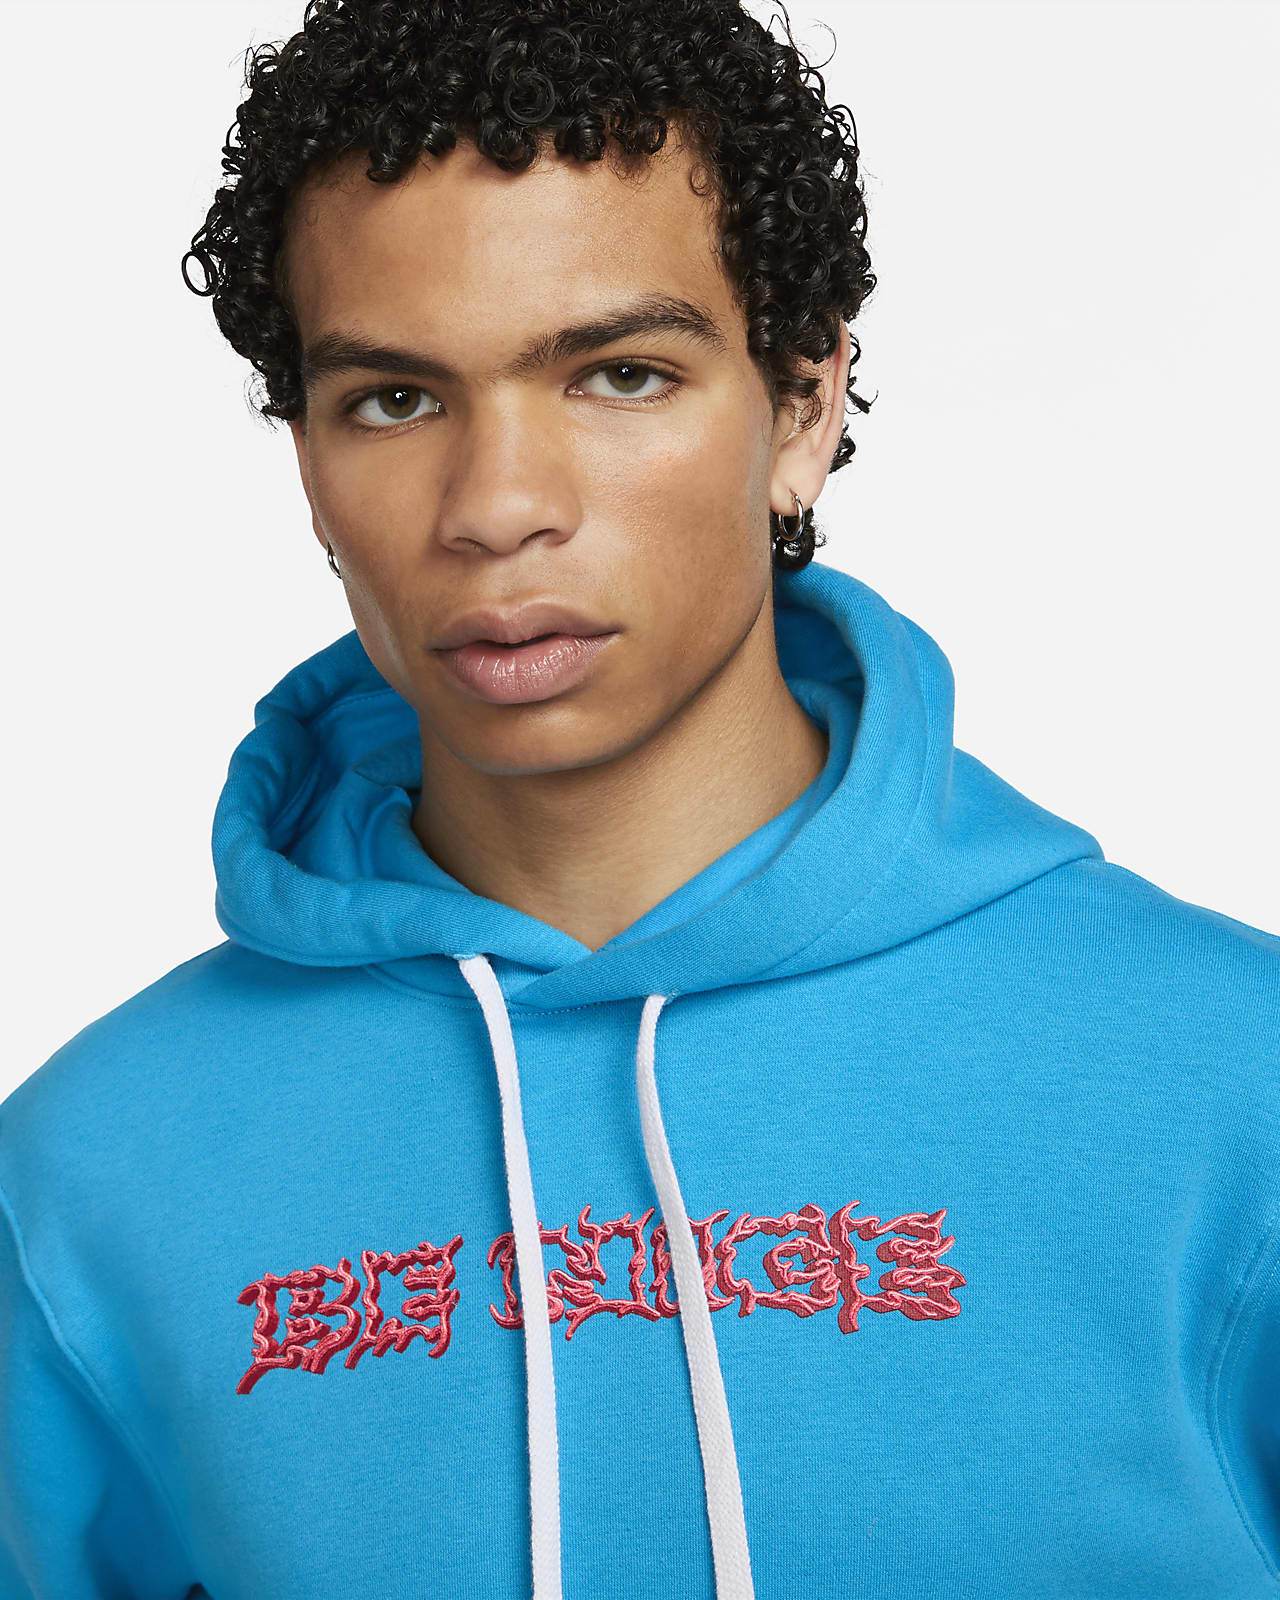 Nike Sportswear Club Fleece Hoodie Sweatshirt in Red for Men